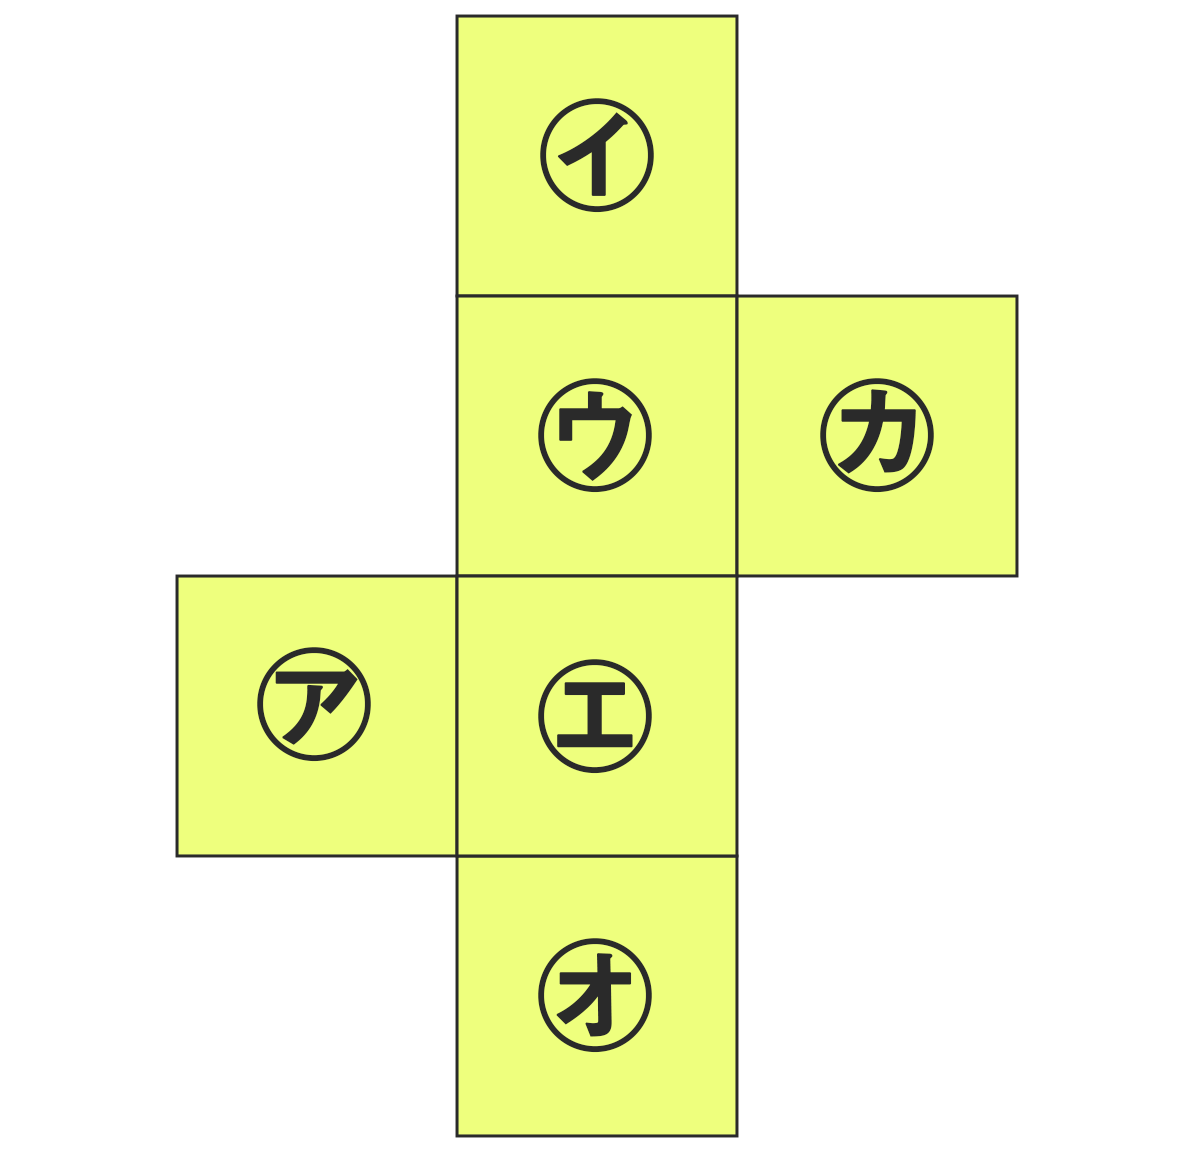 立方体の展開図、問4